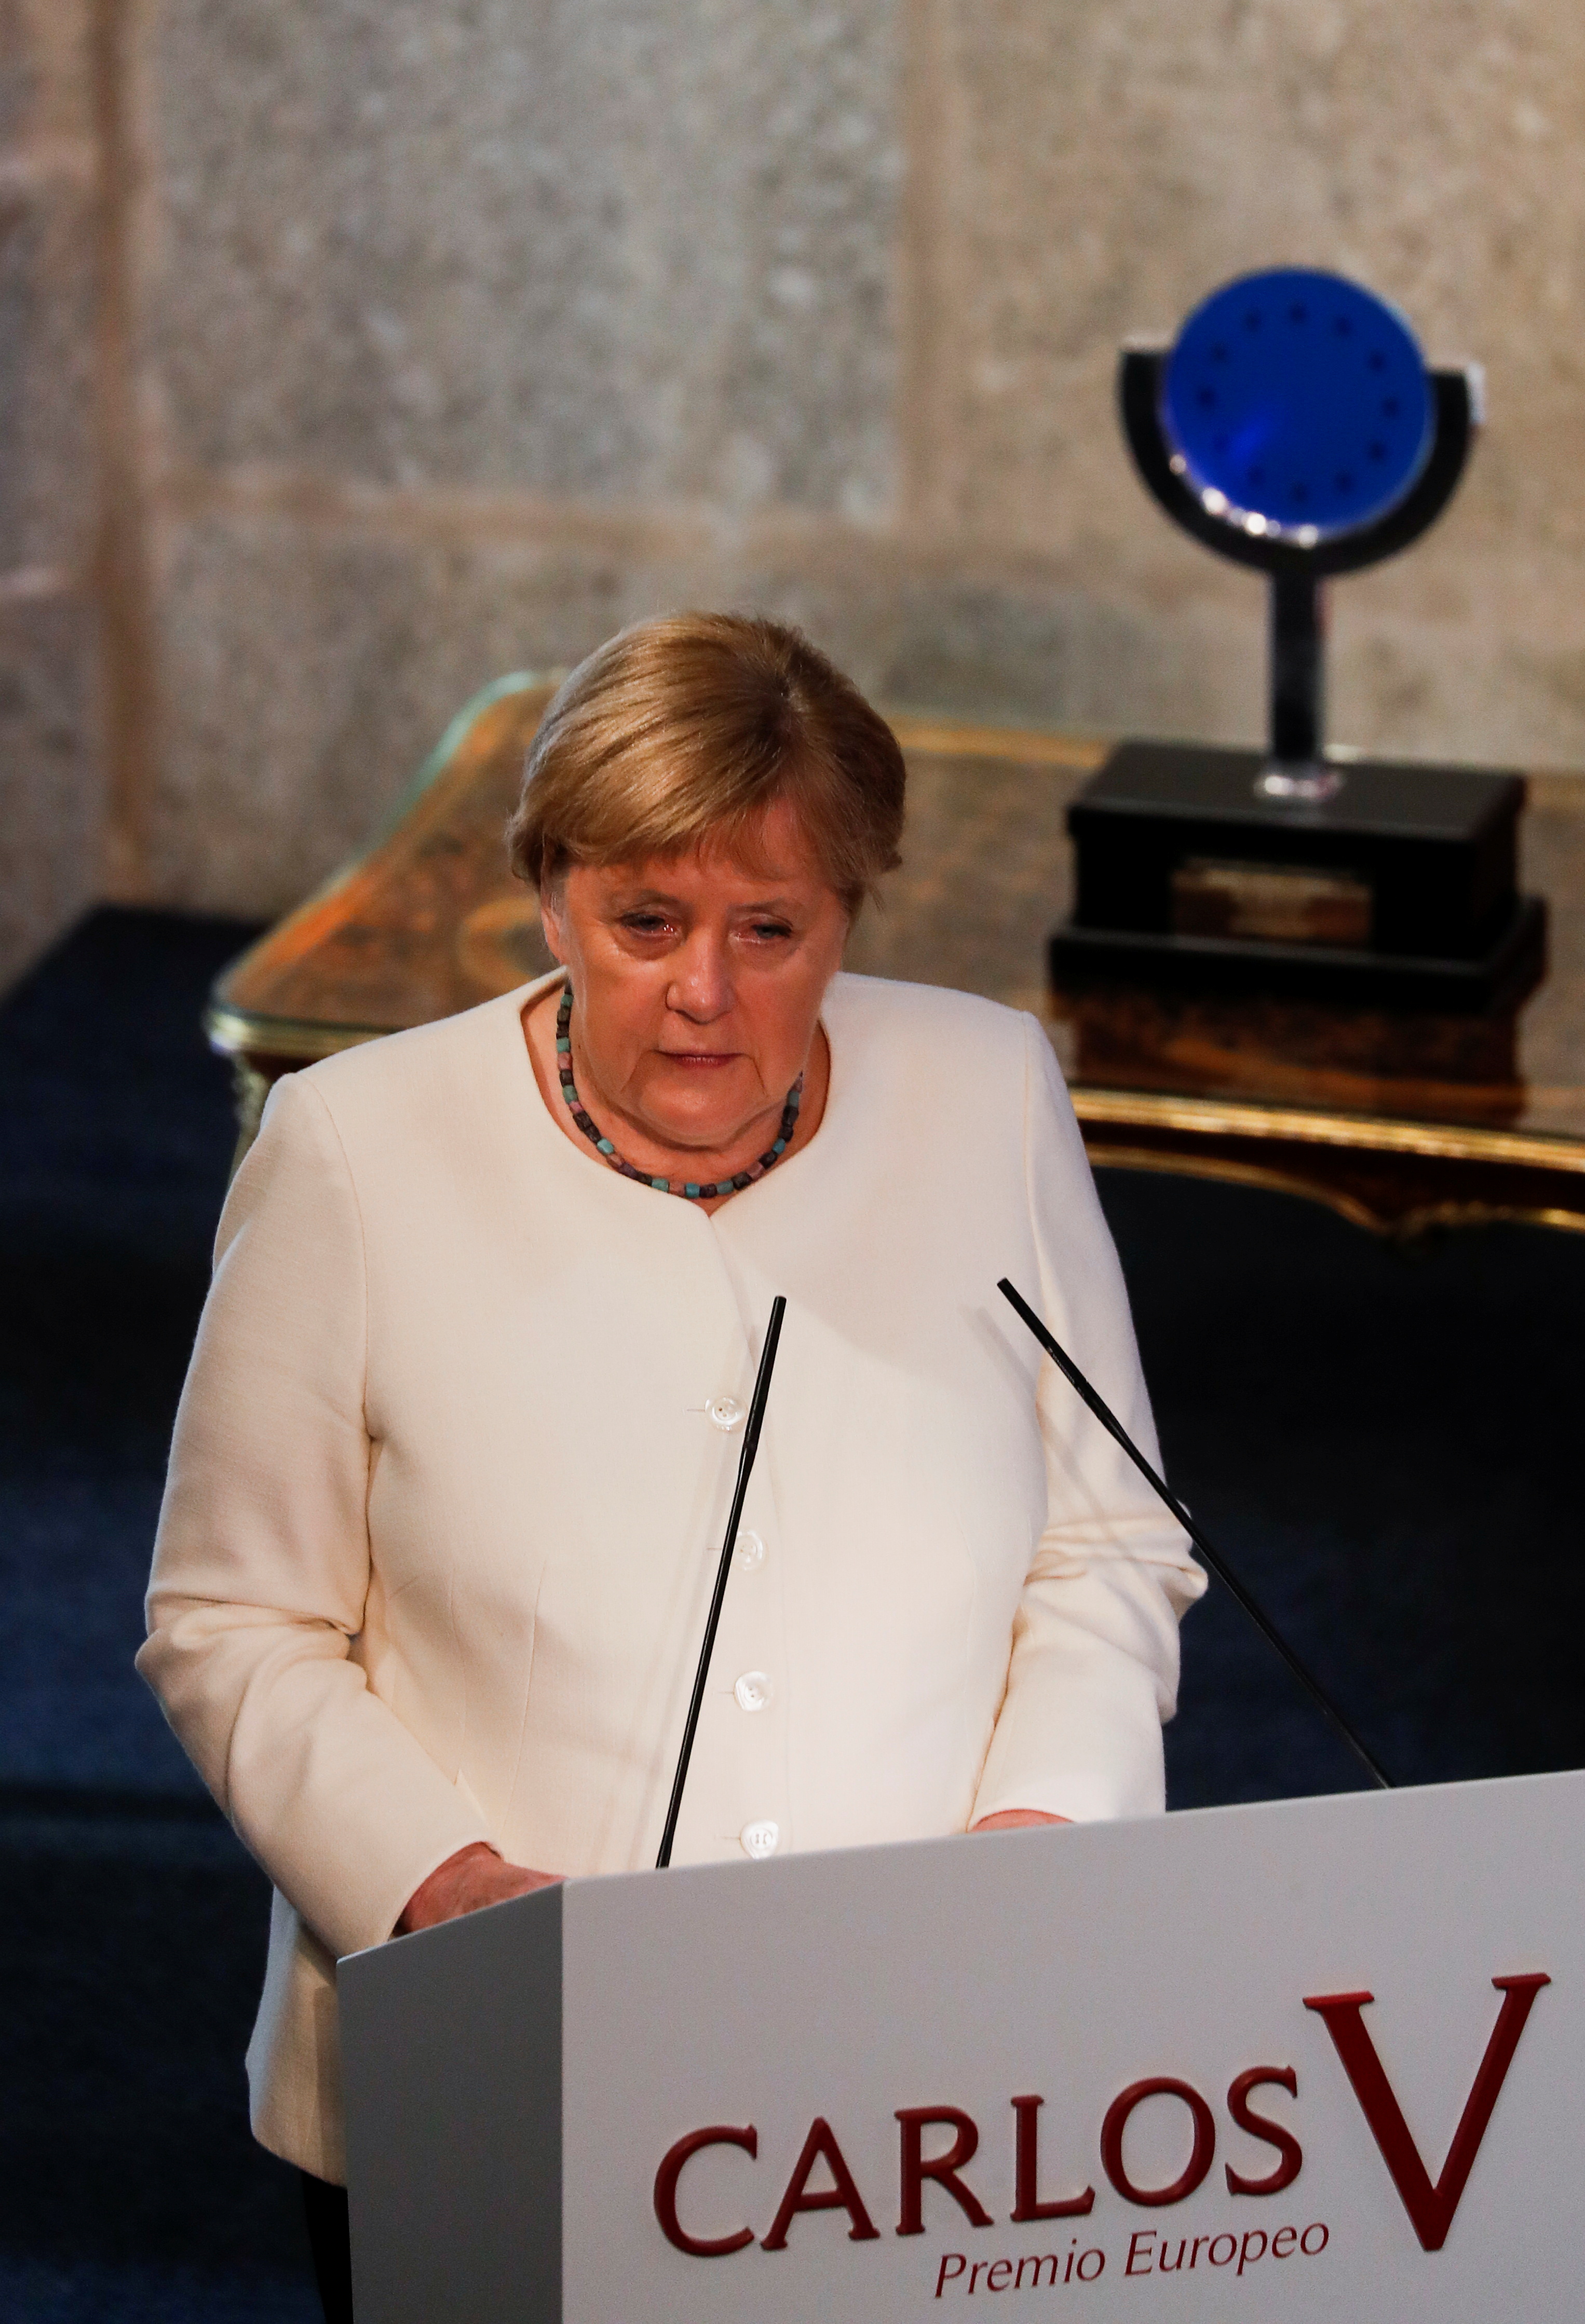 La canciller alemana Angela Merkel pronuncia un discurso, a su llegada para recibir el "Premio Europeo Carlos V" en el Monasterio de Yuste, en la región occidental española de Cáceres, el 14 de octubre de 2021. REUTERS / Susana Vera